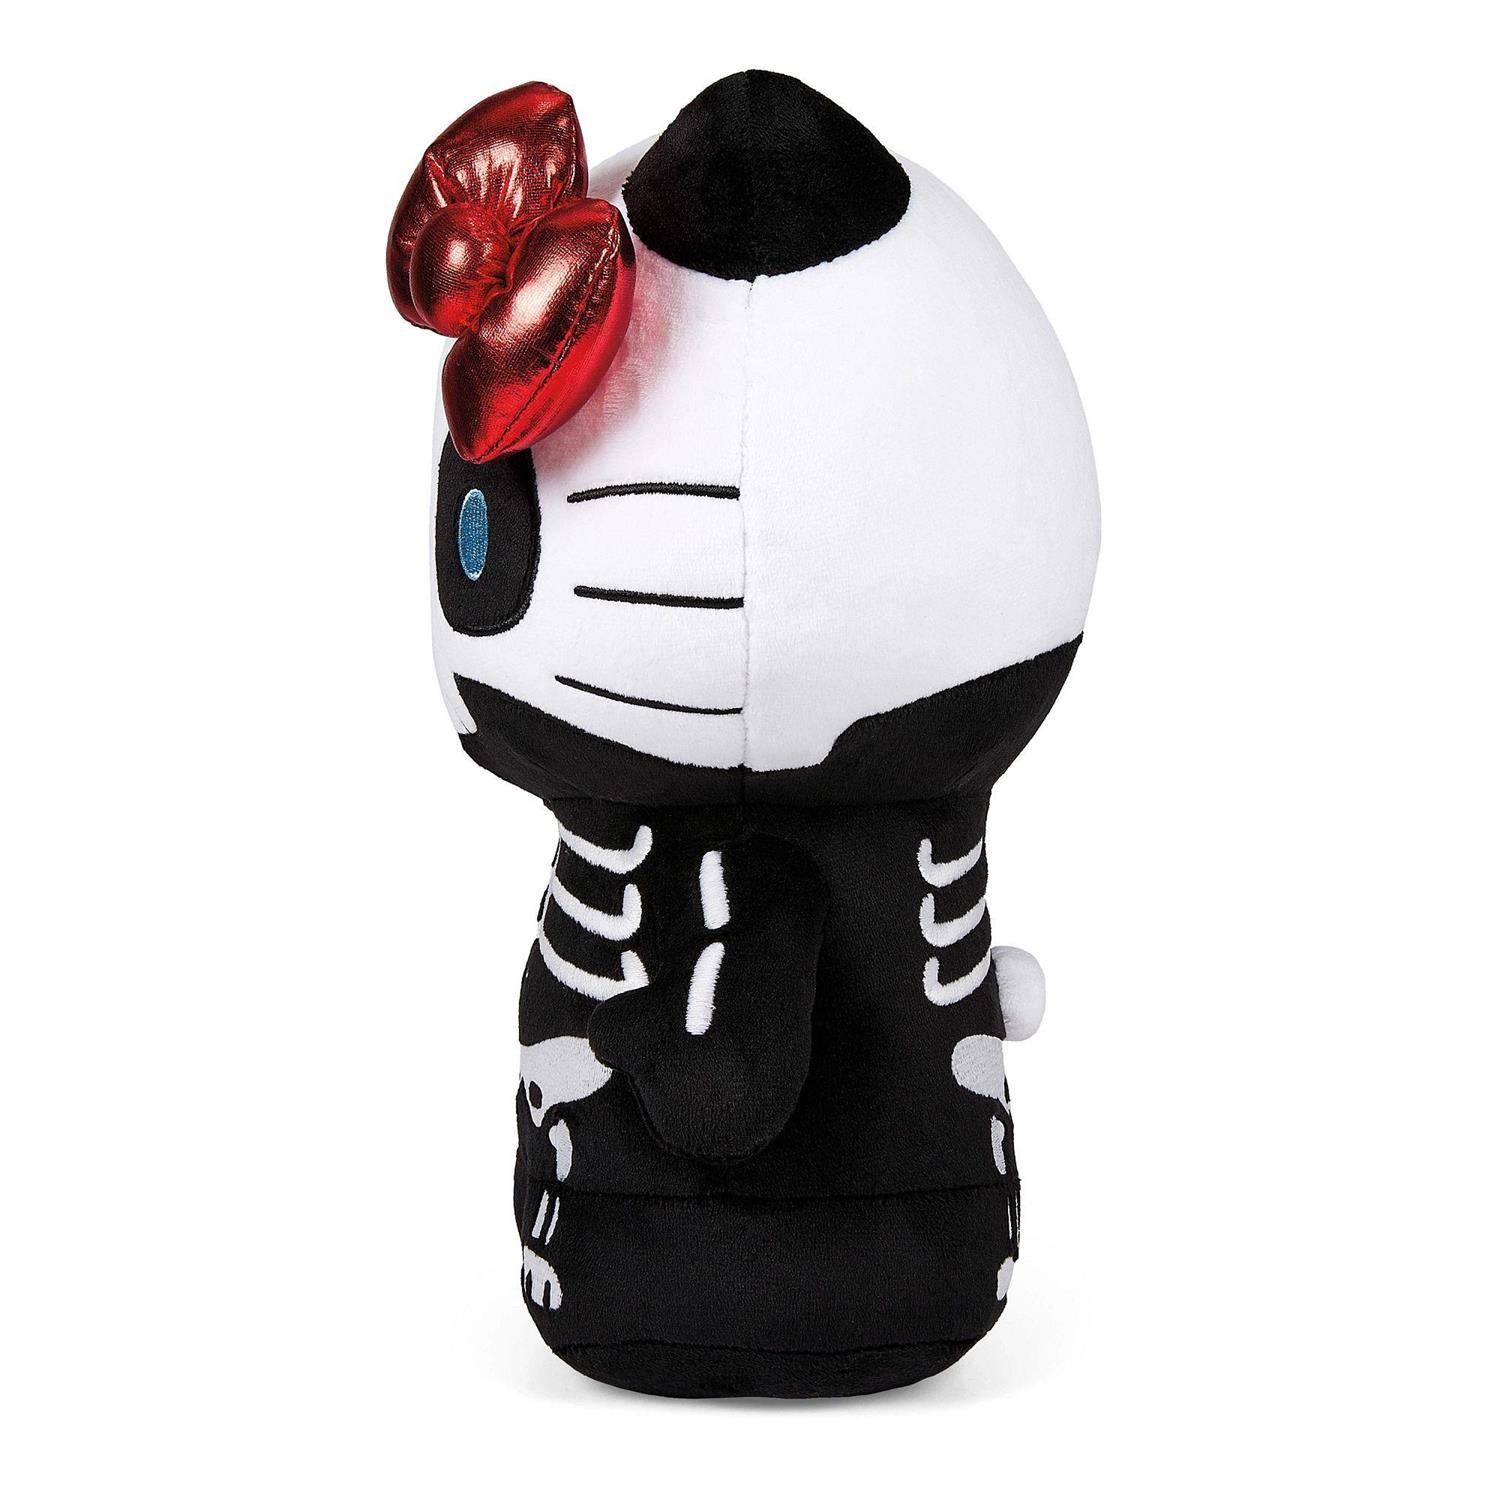 kidrobot x Hello Kitty and Friends: Hello Kitty Halloween Skelebones 13" Plush